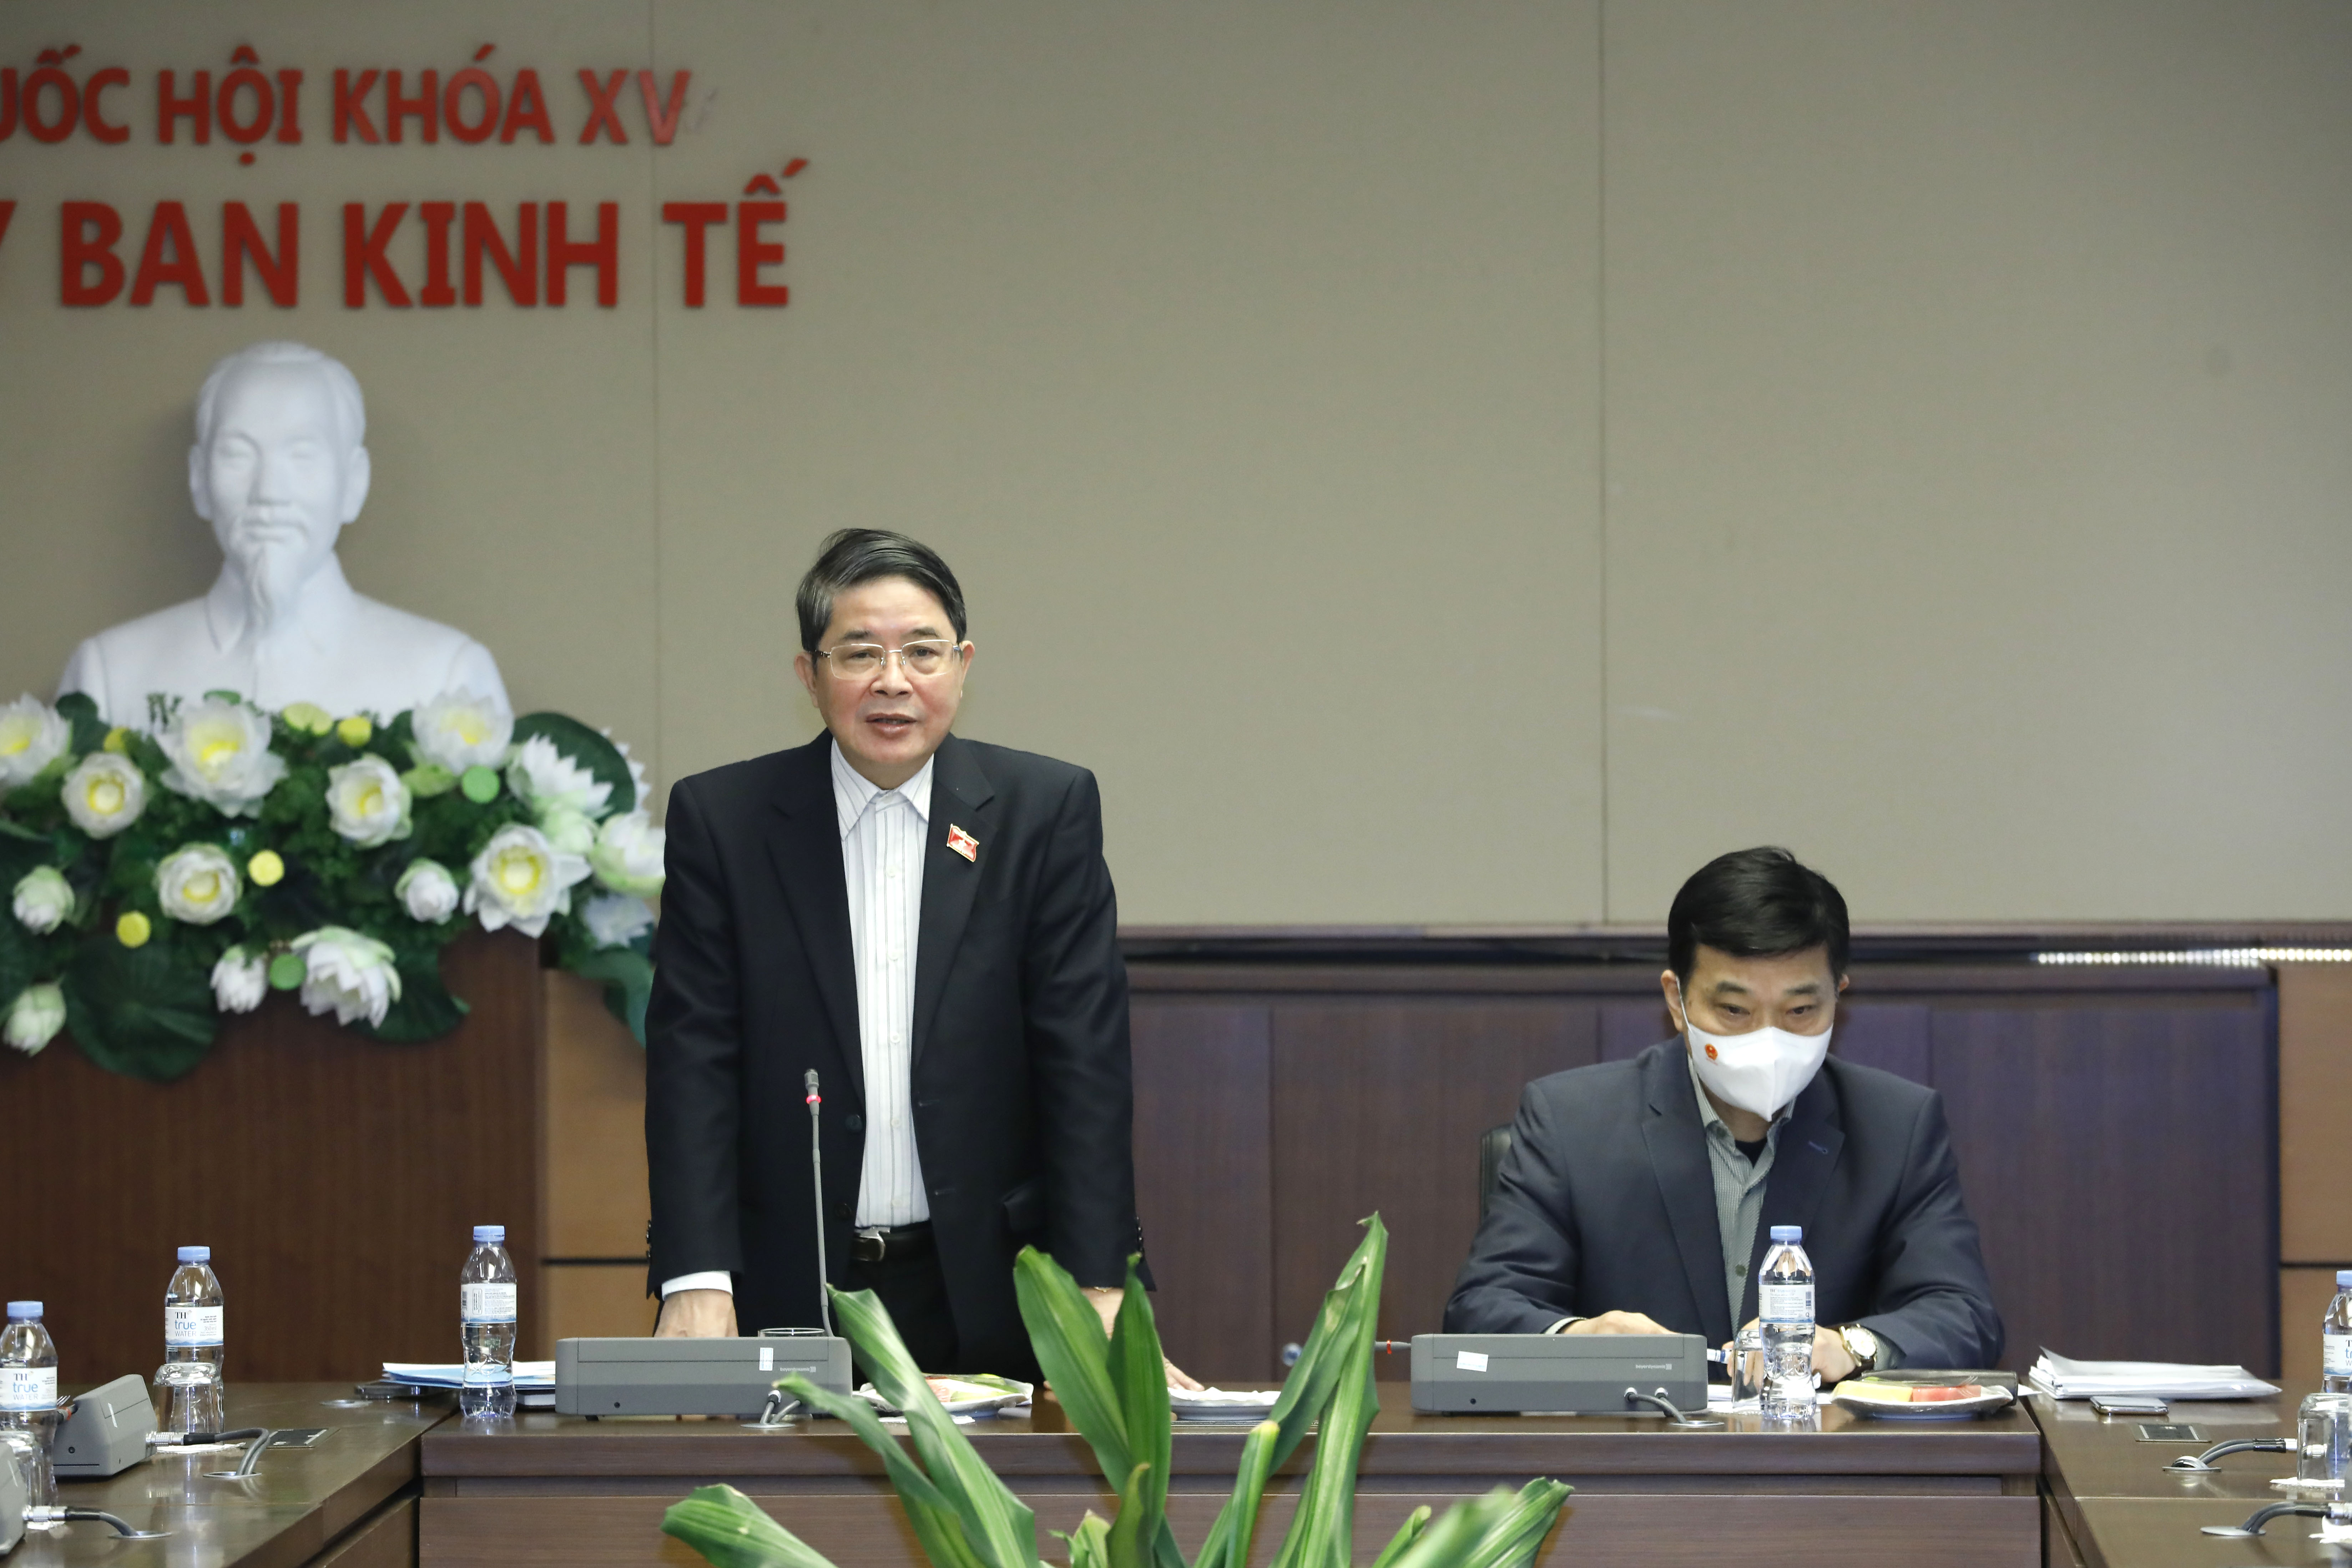 Phó Chủ tịch Quốc hội Nguyễn Đức Hải làm việc với Thường trực Ủy ban Kinh tế